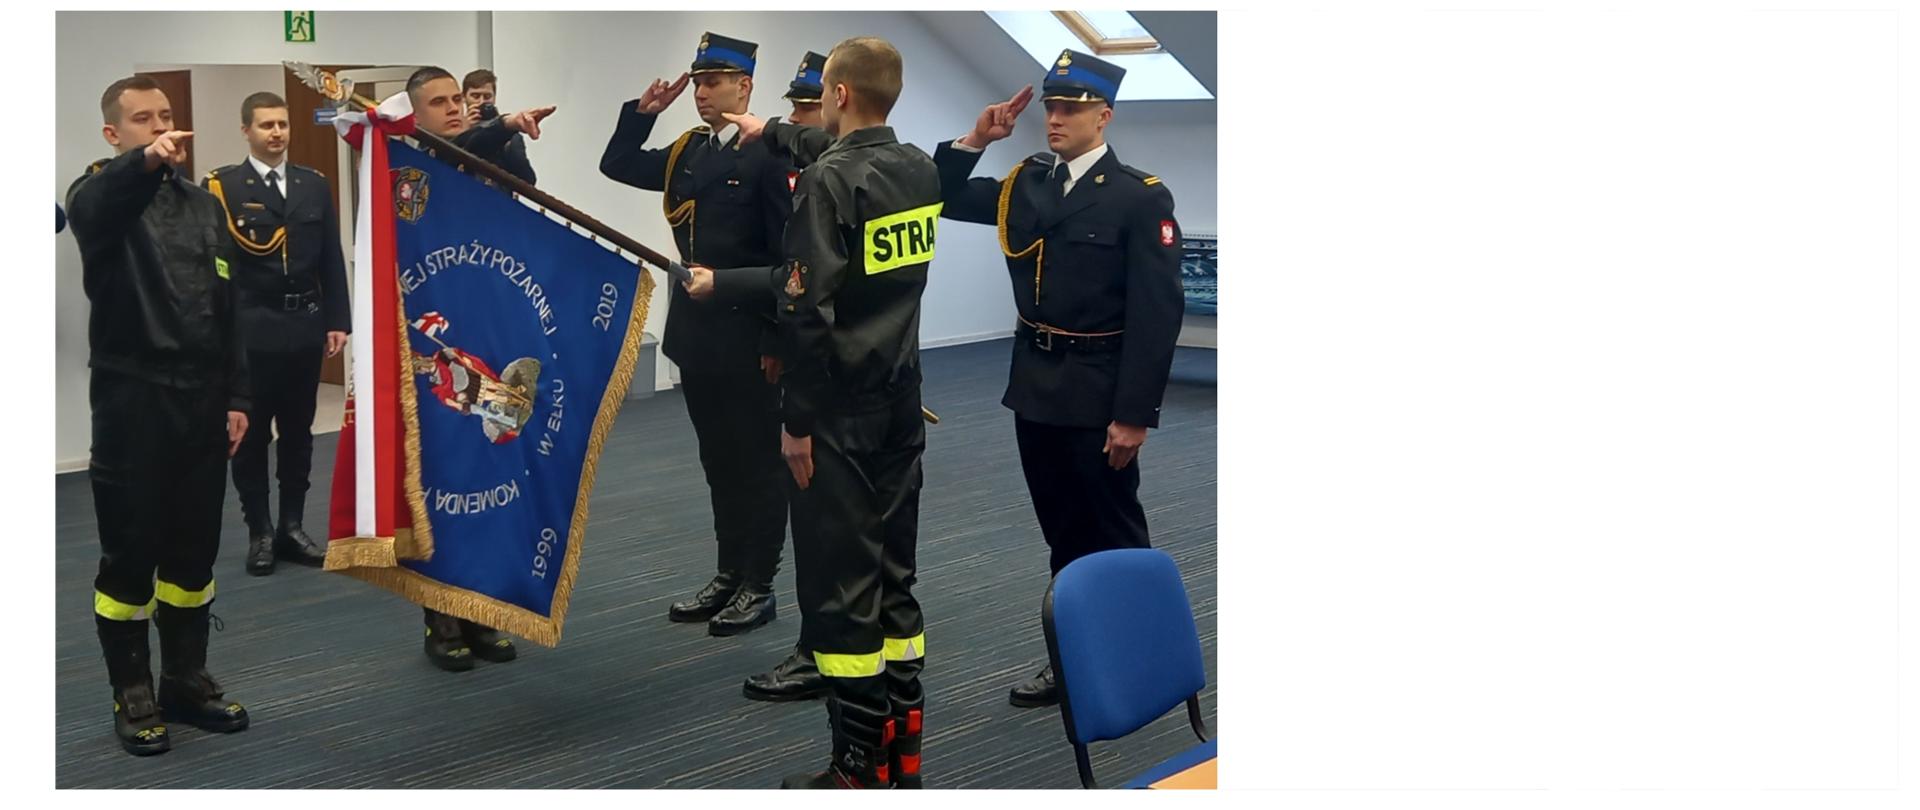 Ślubowanie na sztandar przyjętych do służby strażaków